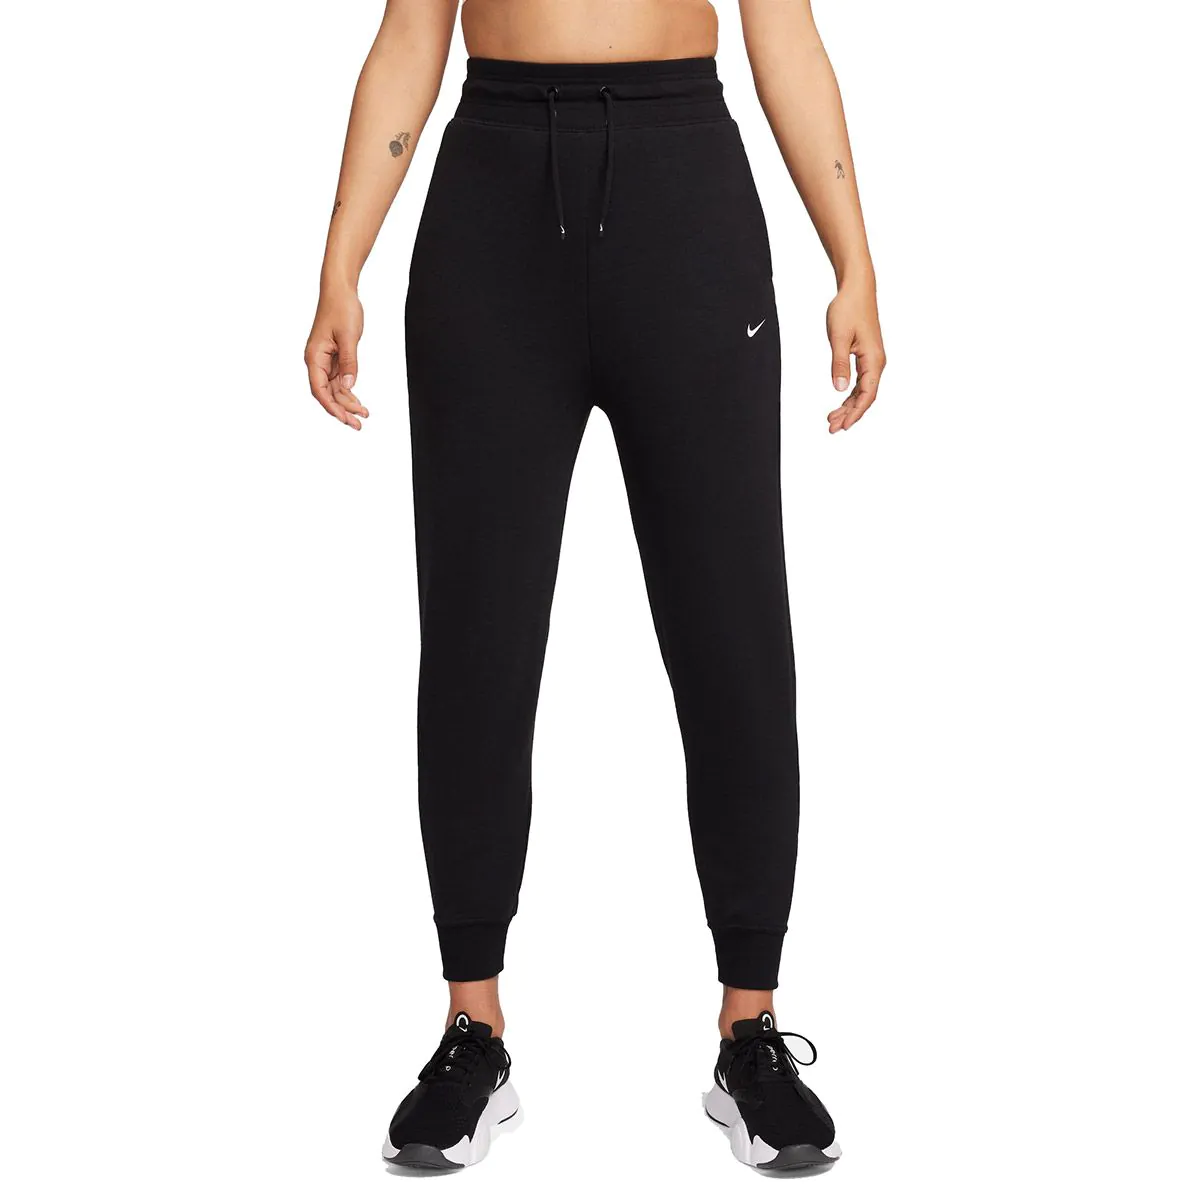 Womens high waisted sports 7/8 leggings Nike SPORTSWEAR ESSENTIAL W grey